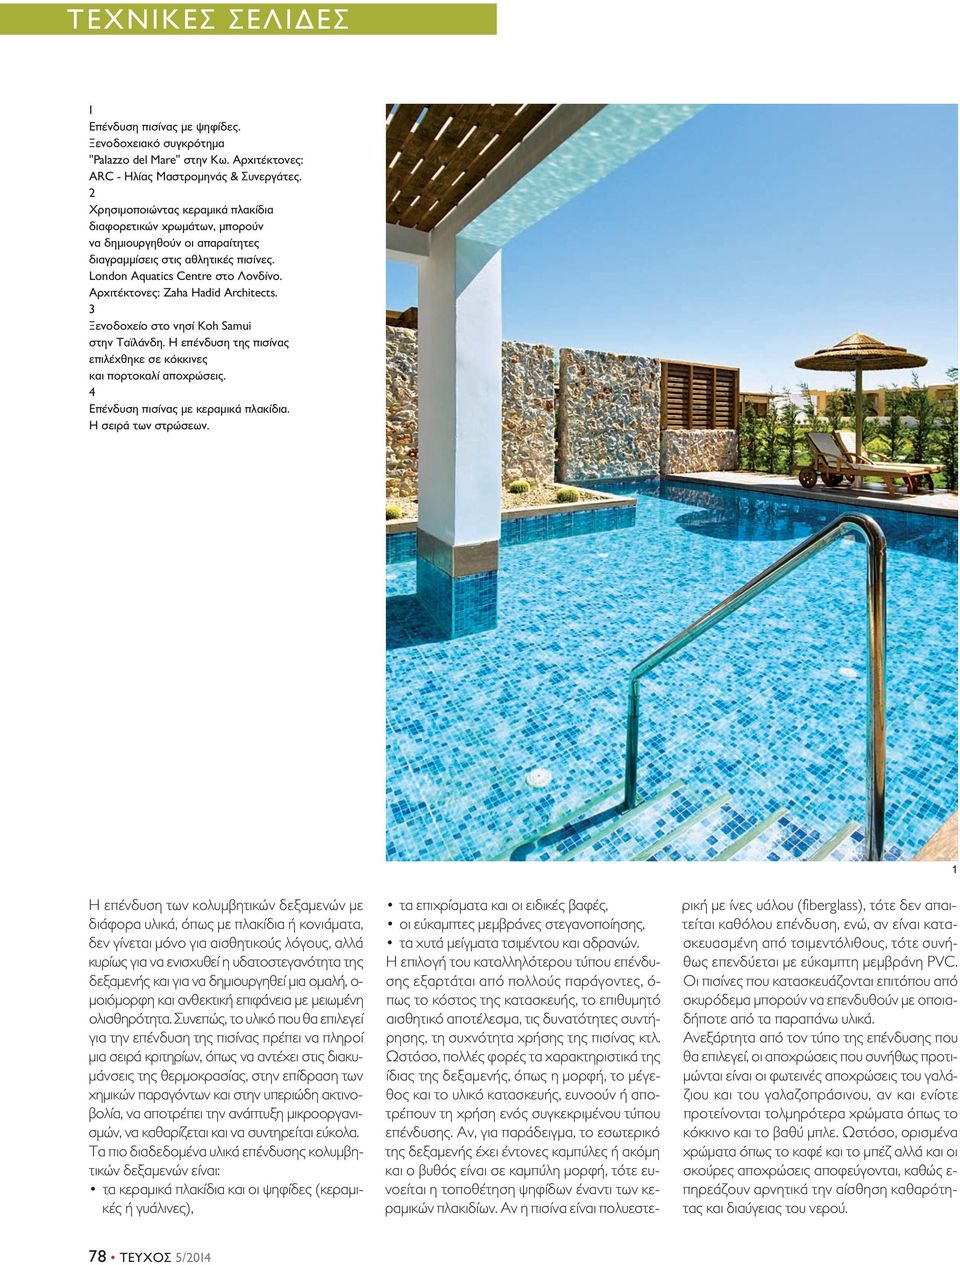 Αρχιτέκτονες: Zaha Hadid Architects. Ξενοδοχείο στο νησί Koh Samui στην Ταϊλάνδη. Η επένδυση της πισίνας επιλέχθηκε σε κόκκινες και πορτοκαλί αποχρώσεις. 4 Επένδυση πισίνας με κεραμικά πλακίδια.